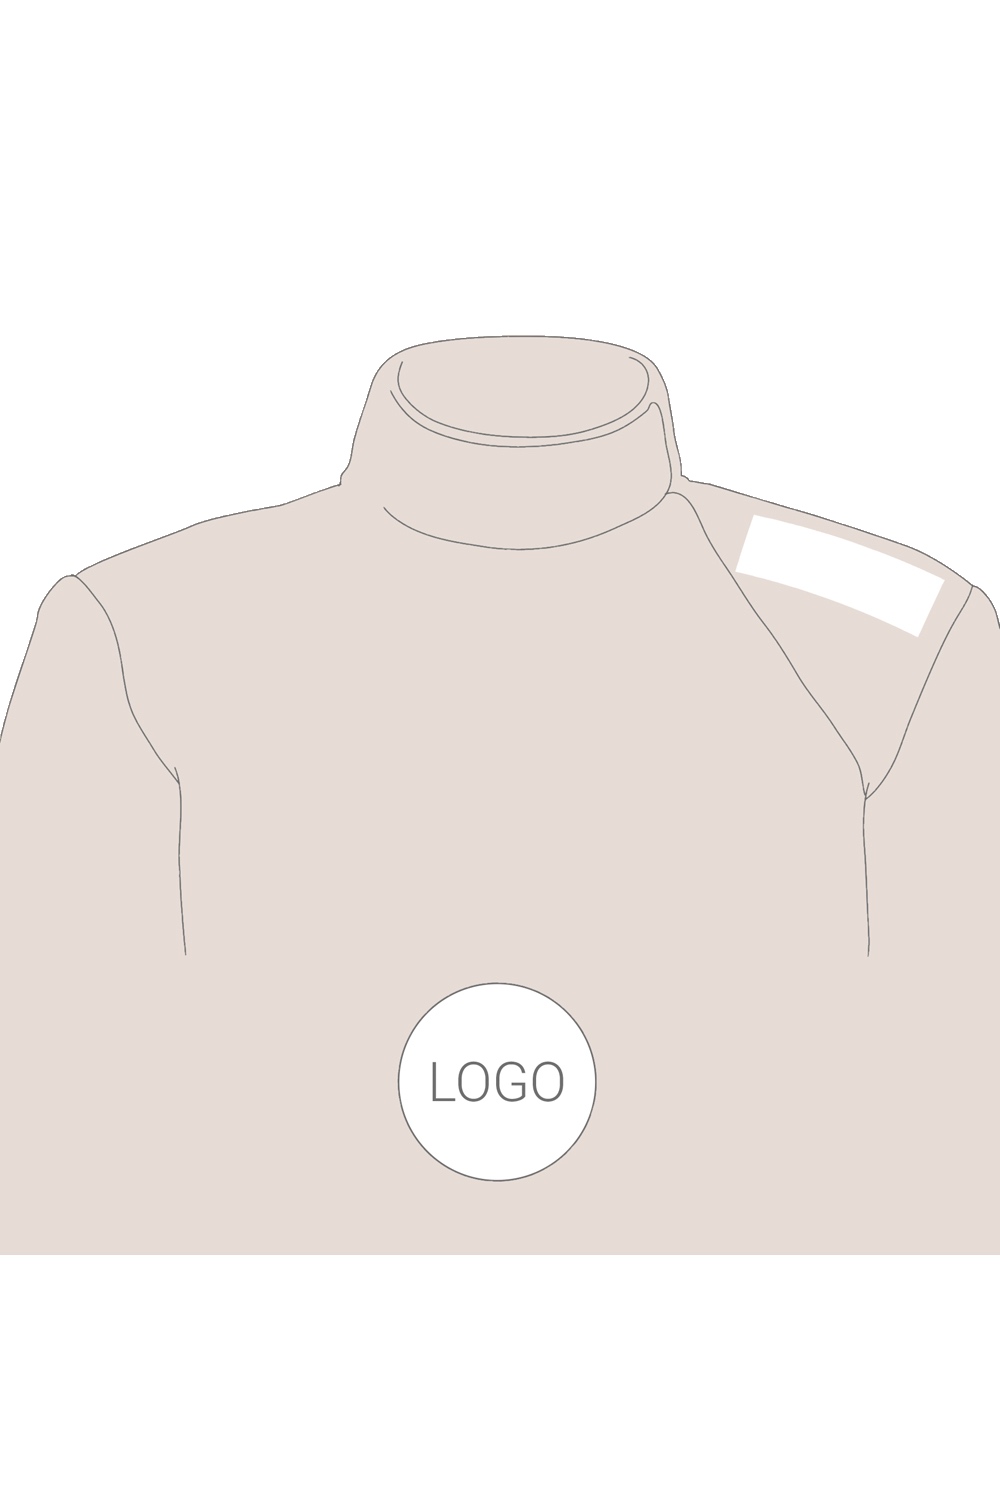 Printing of Sponsorship Logos on Fencing Jacket